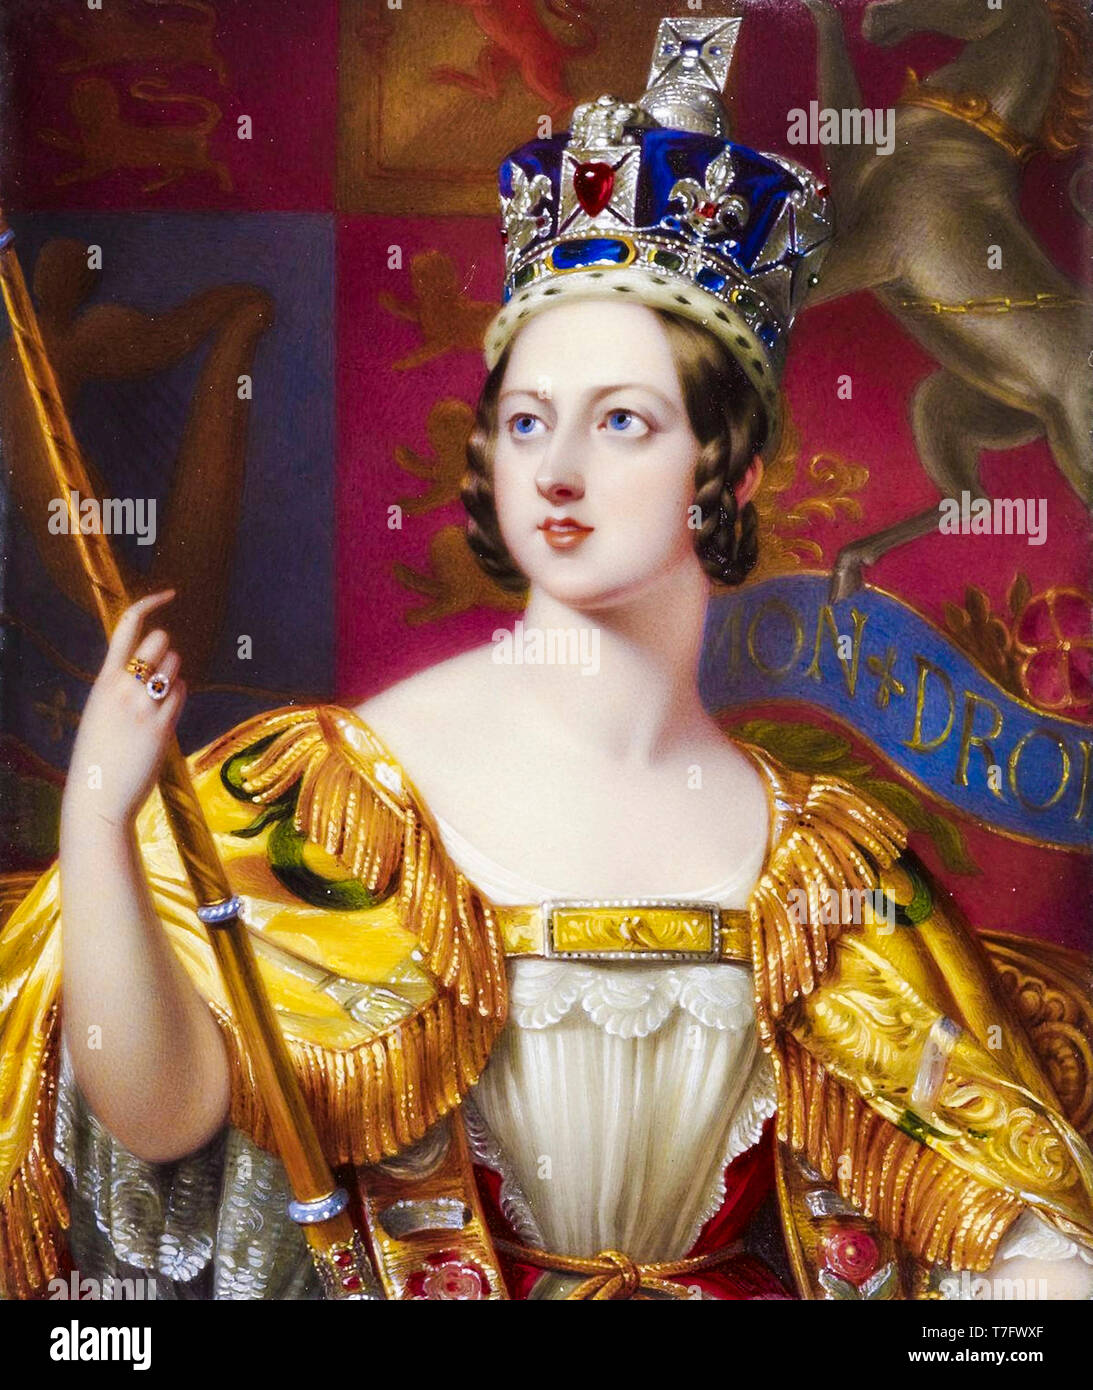 La regina Victoria nella sua incoronazione accappatoi con lo stato di Imperial Crown, ritratto, 1843 Foto Stock